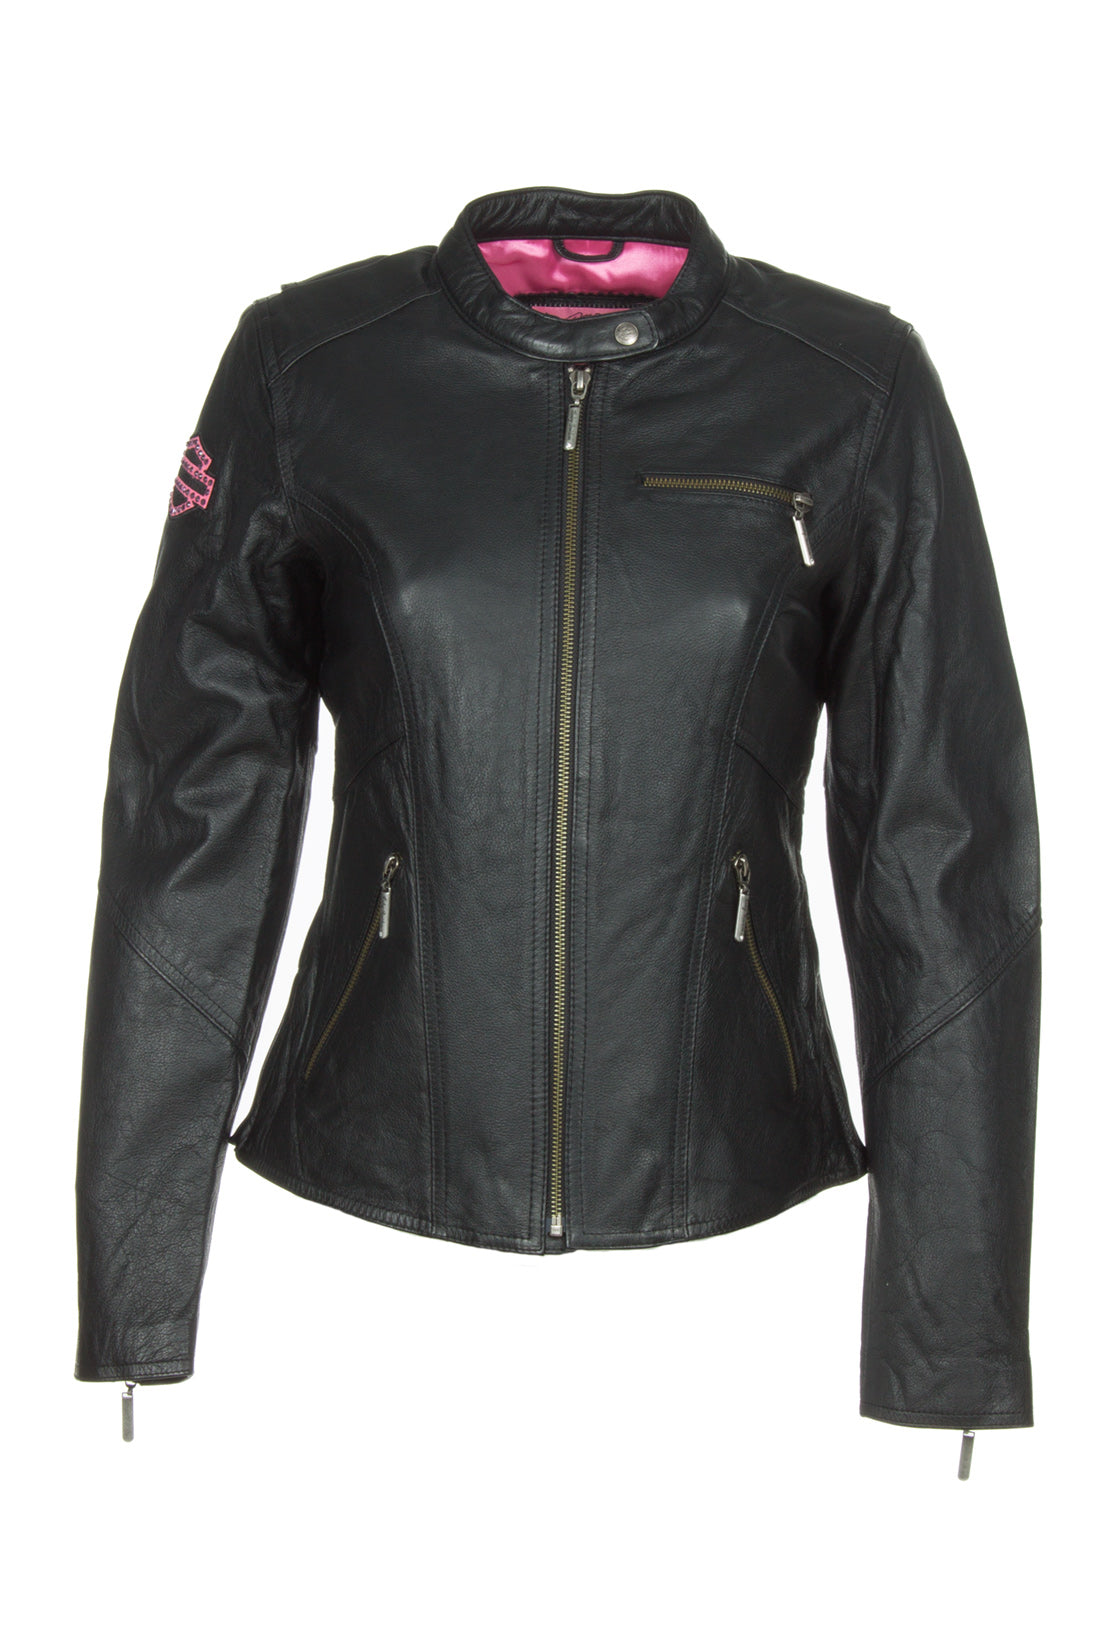 Harley-Davidson 98022-12VW Women's Jacket Pink Label Embellished Black Leather